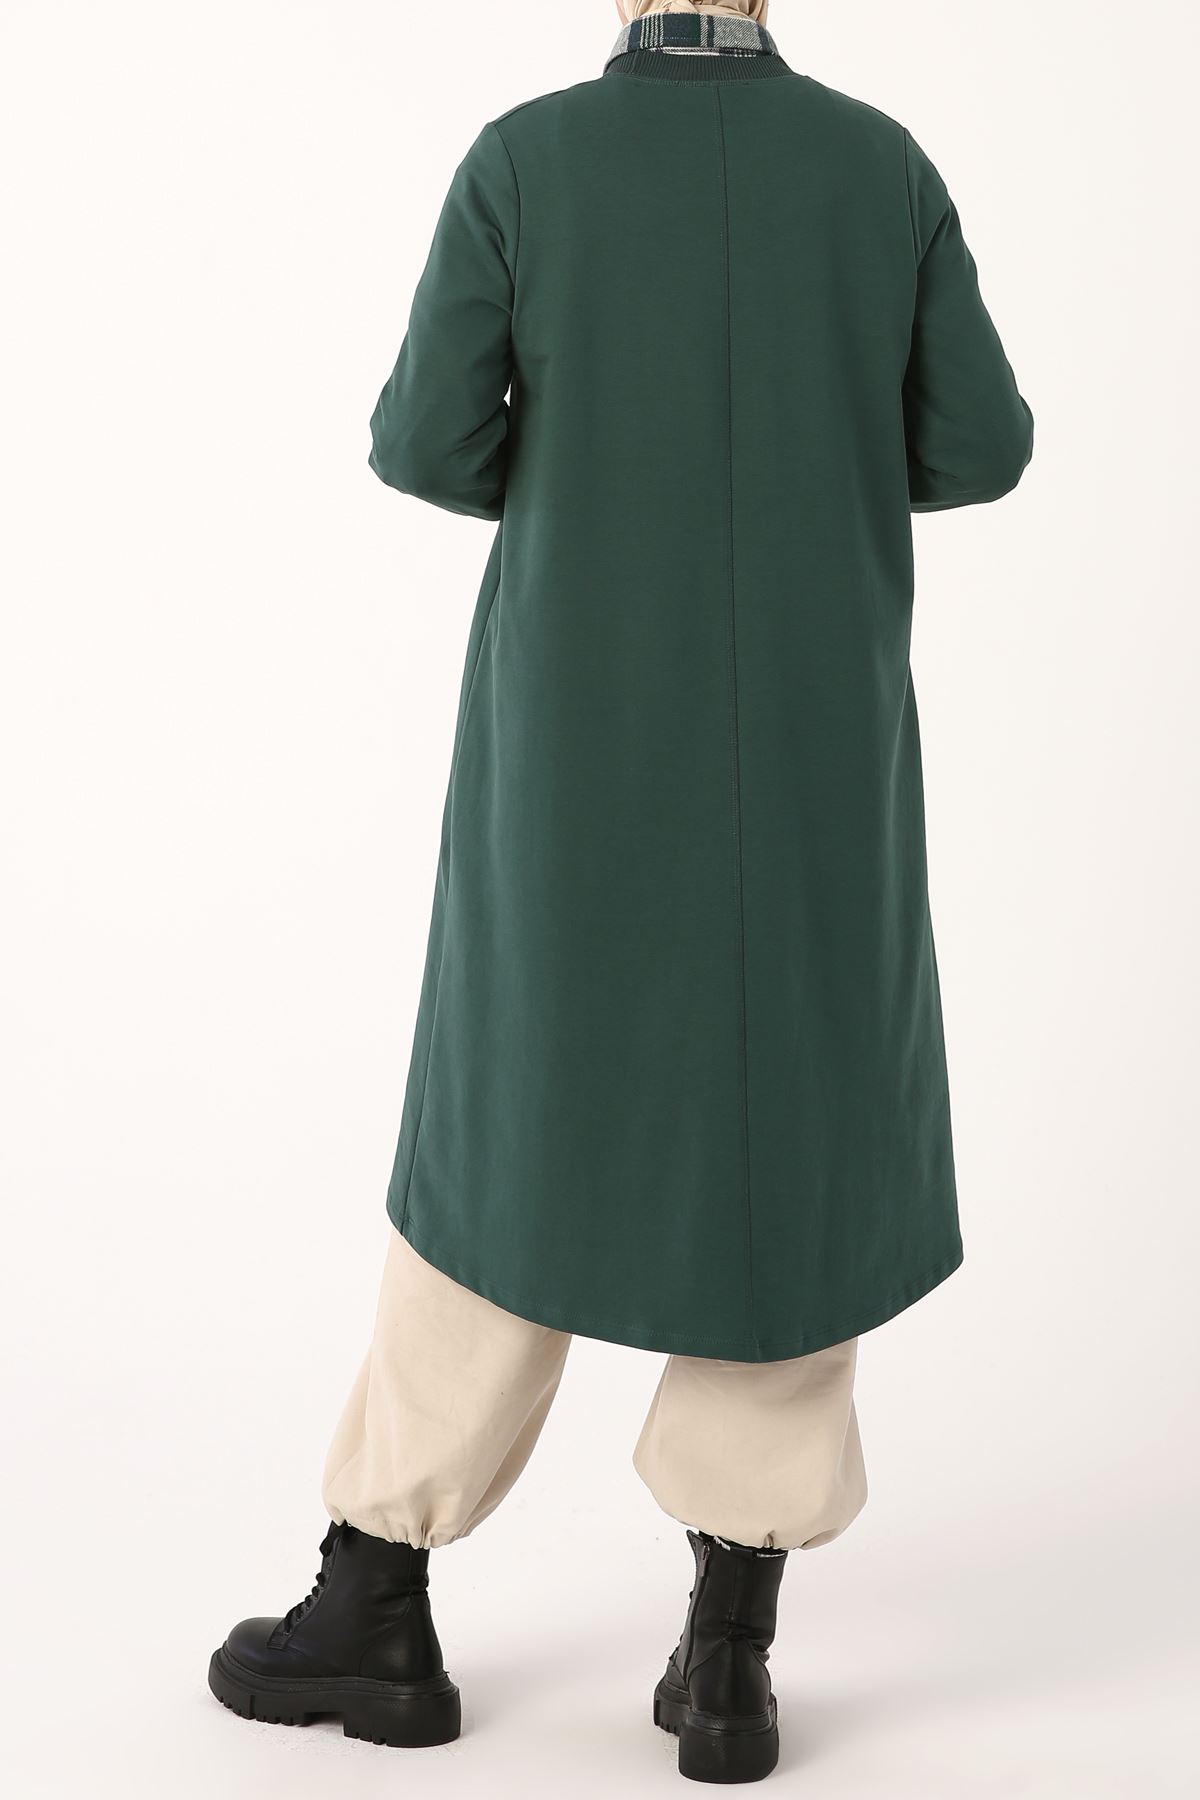 Kadın Yakası Ribanalı Rahat Tunik-zümrüt yeşili